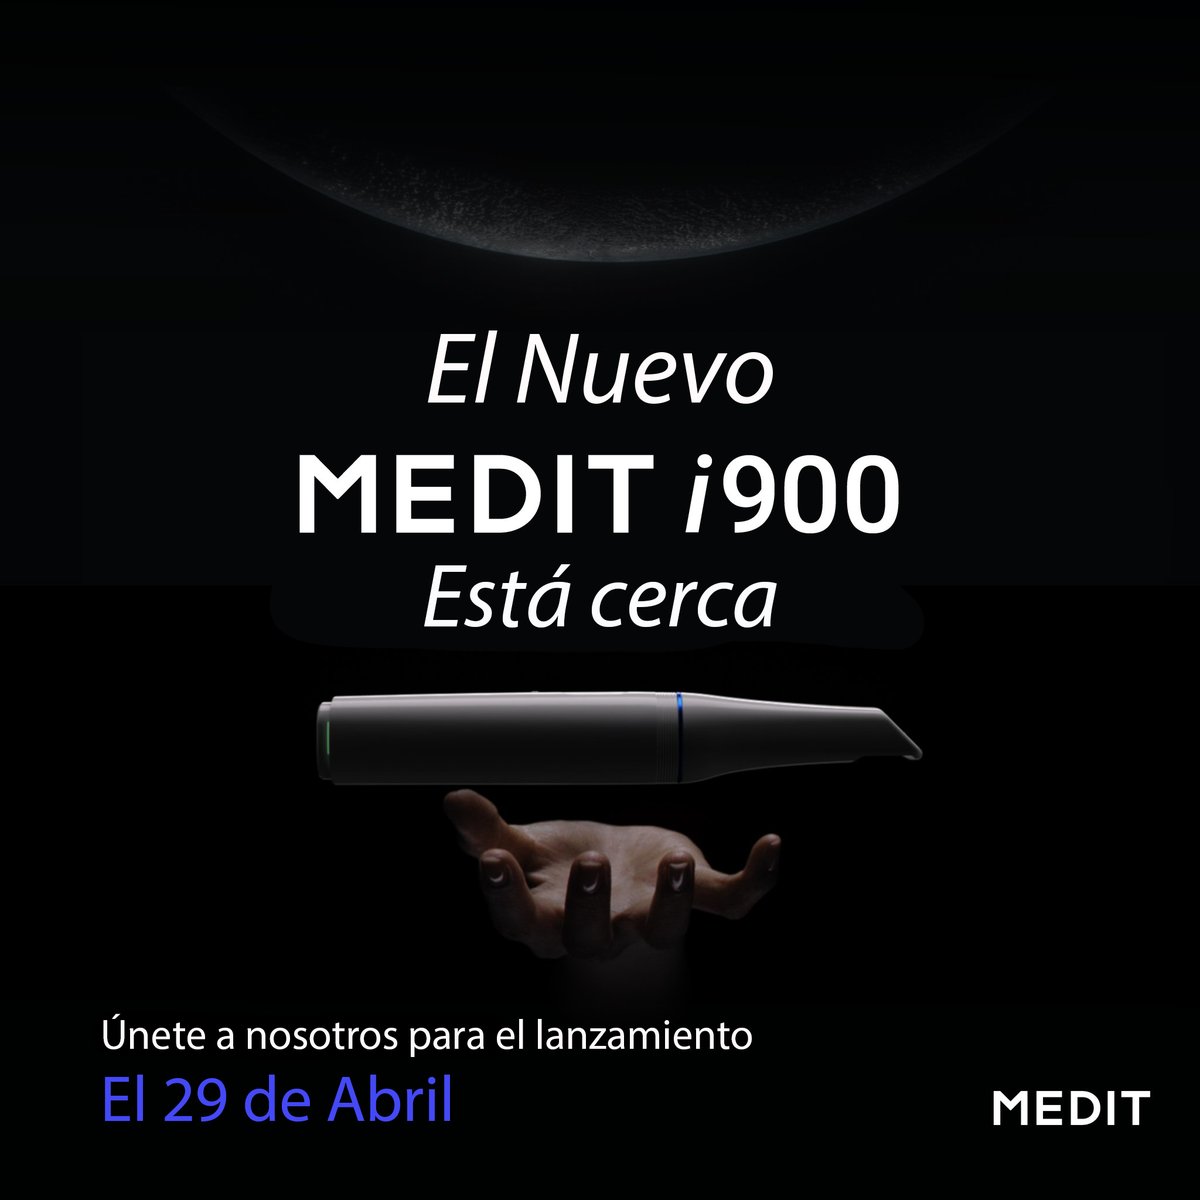 ⏺ El nuevo Medit i900 ya casi está aquí

🔵 Únete a nosotros el 29 de abril para el lanzamiento global y sé el primero en revolucionar tu práctica dental.

✔Regístrate ahora para conocerlo: hubs.la/Q02s4yLS0

#Mediti900 #Intraoralscanner #MeditIOS #DigitalDentistry